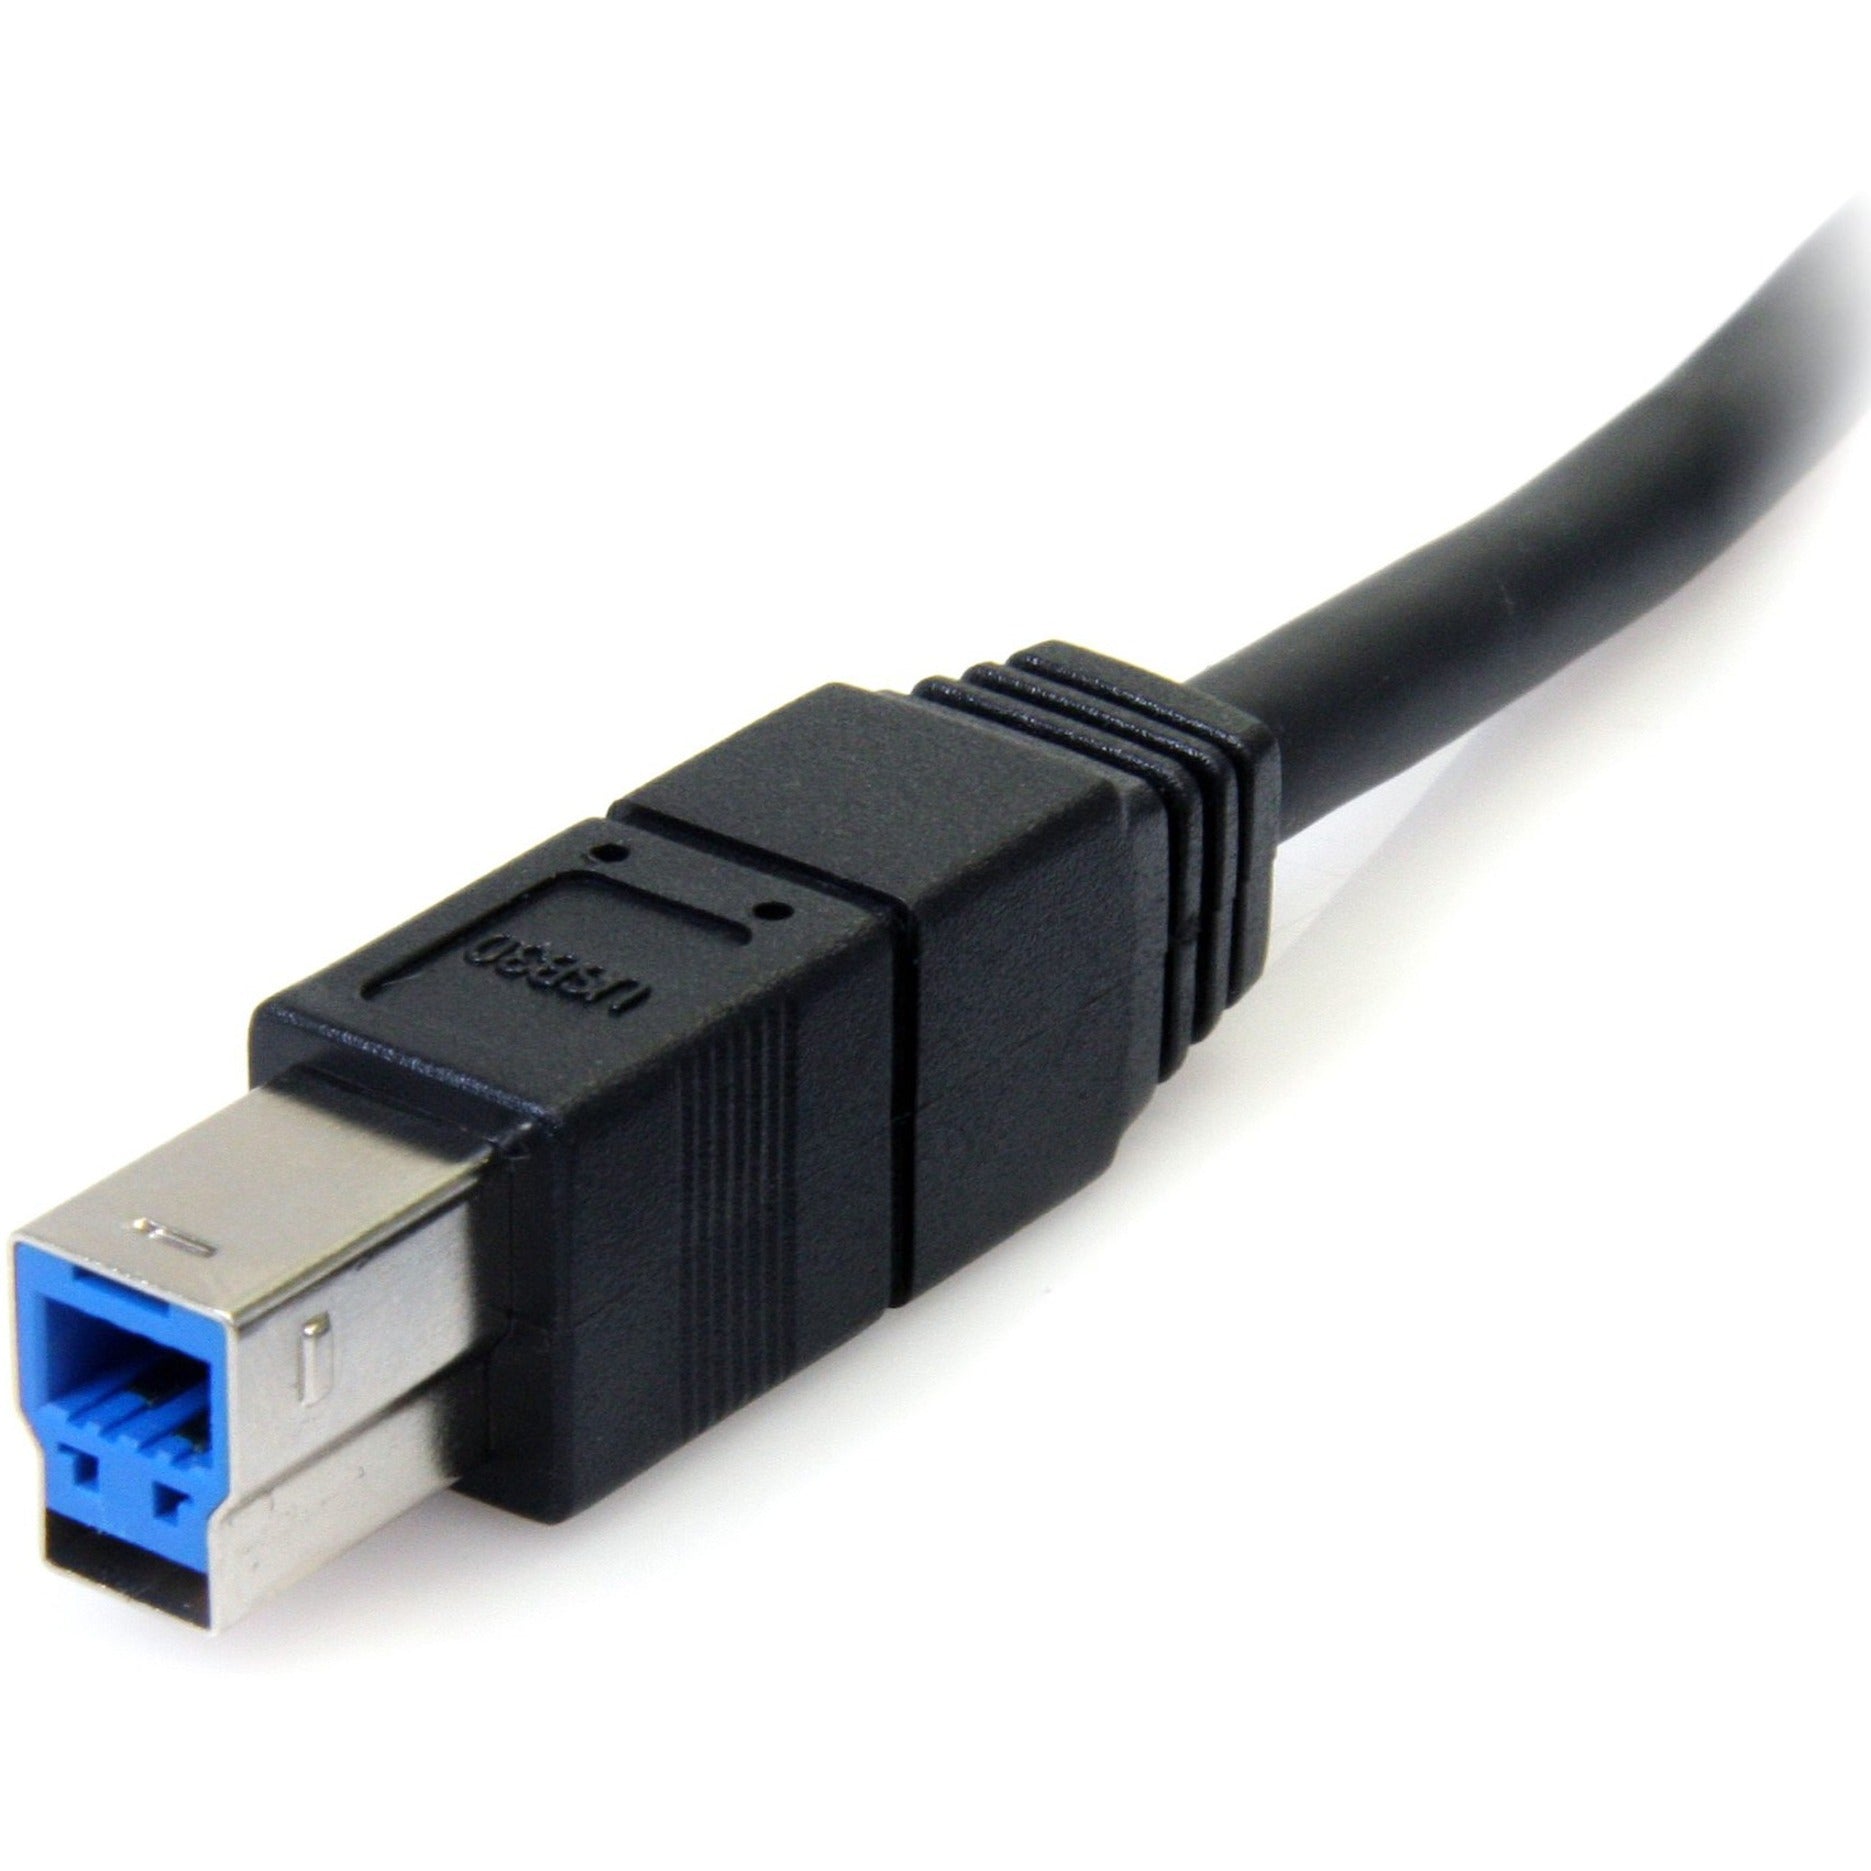 StarTech.com USB3SAB6BK 6 قدم كبل USB 3.0 أسود فائق السرعة A إلى B - ذكر إلى ذكر ، نقل البيانات بسرعة عالية ، ضمان مدى الحياة